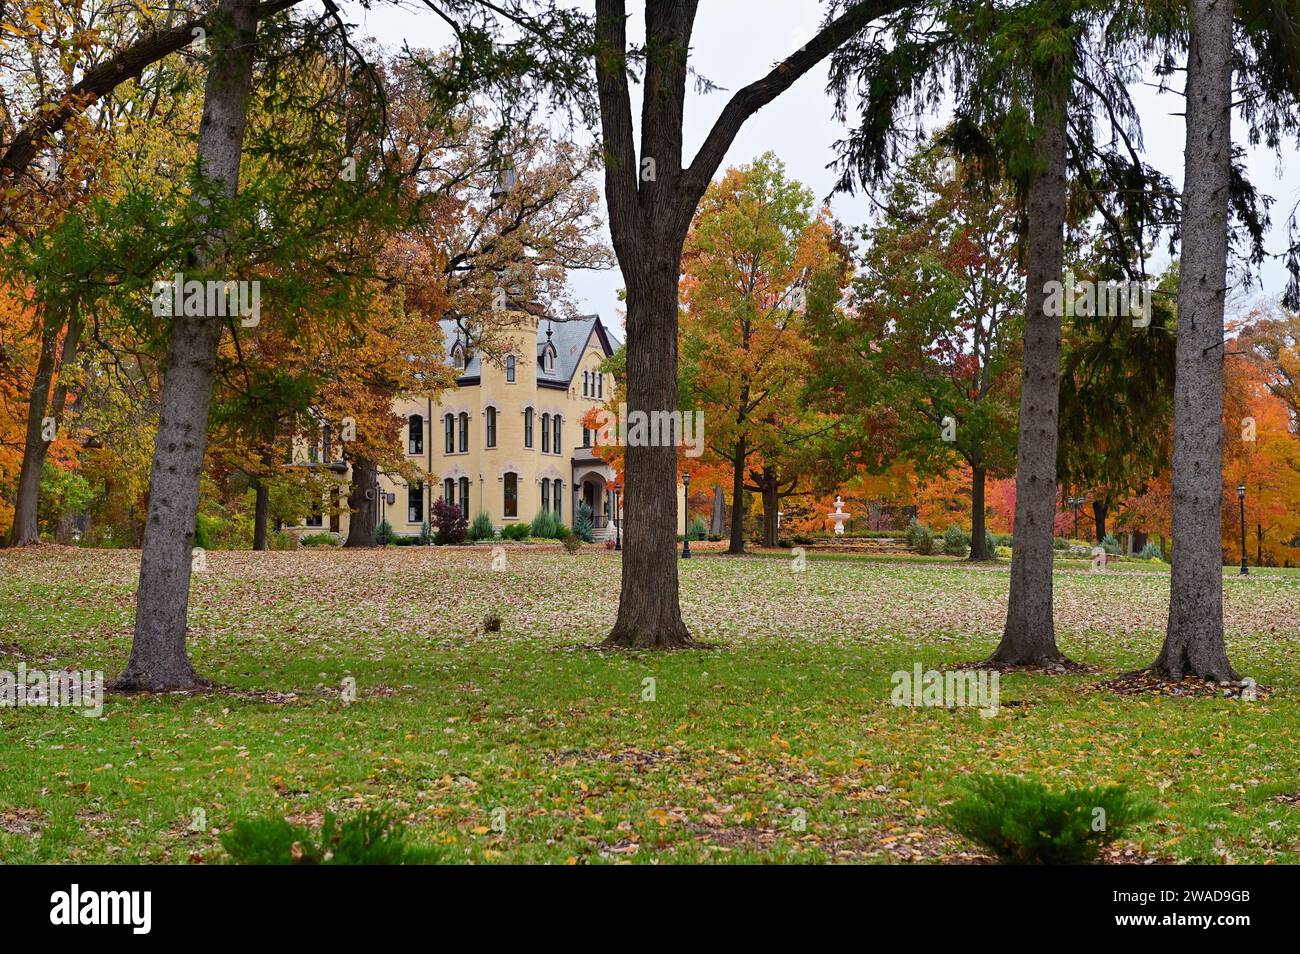 Wayne, Illinois, USA: Ein großes Landgut auf einem bewaldeten Grundstück zeigt die Farben und das Gefühl des Herbstes. Stockfoto